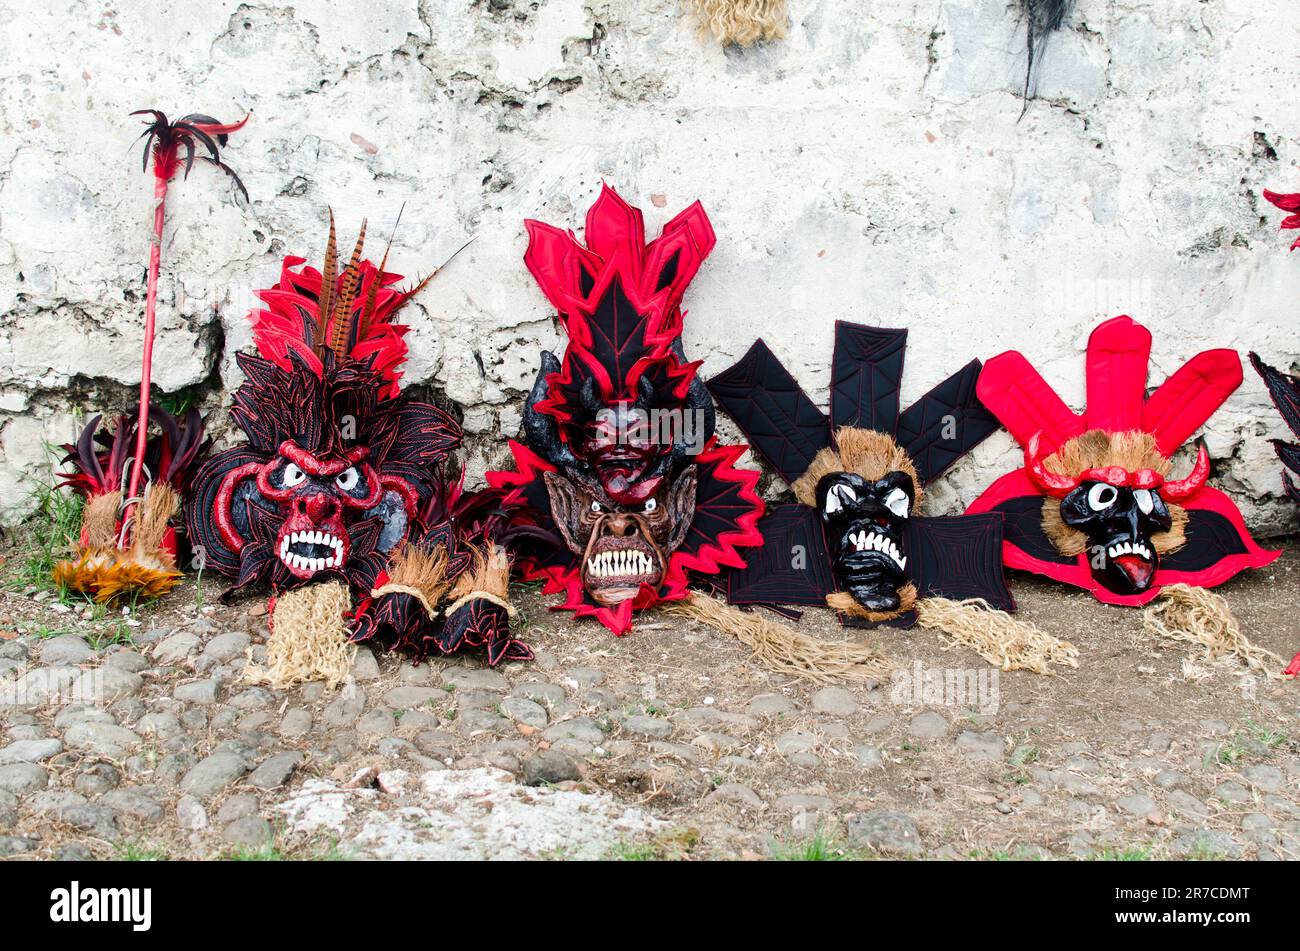 Détail des masques captivants de Colon Diablos mettant en valeur la richesse de la culture du Congo Banque D'Images